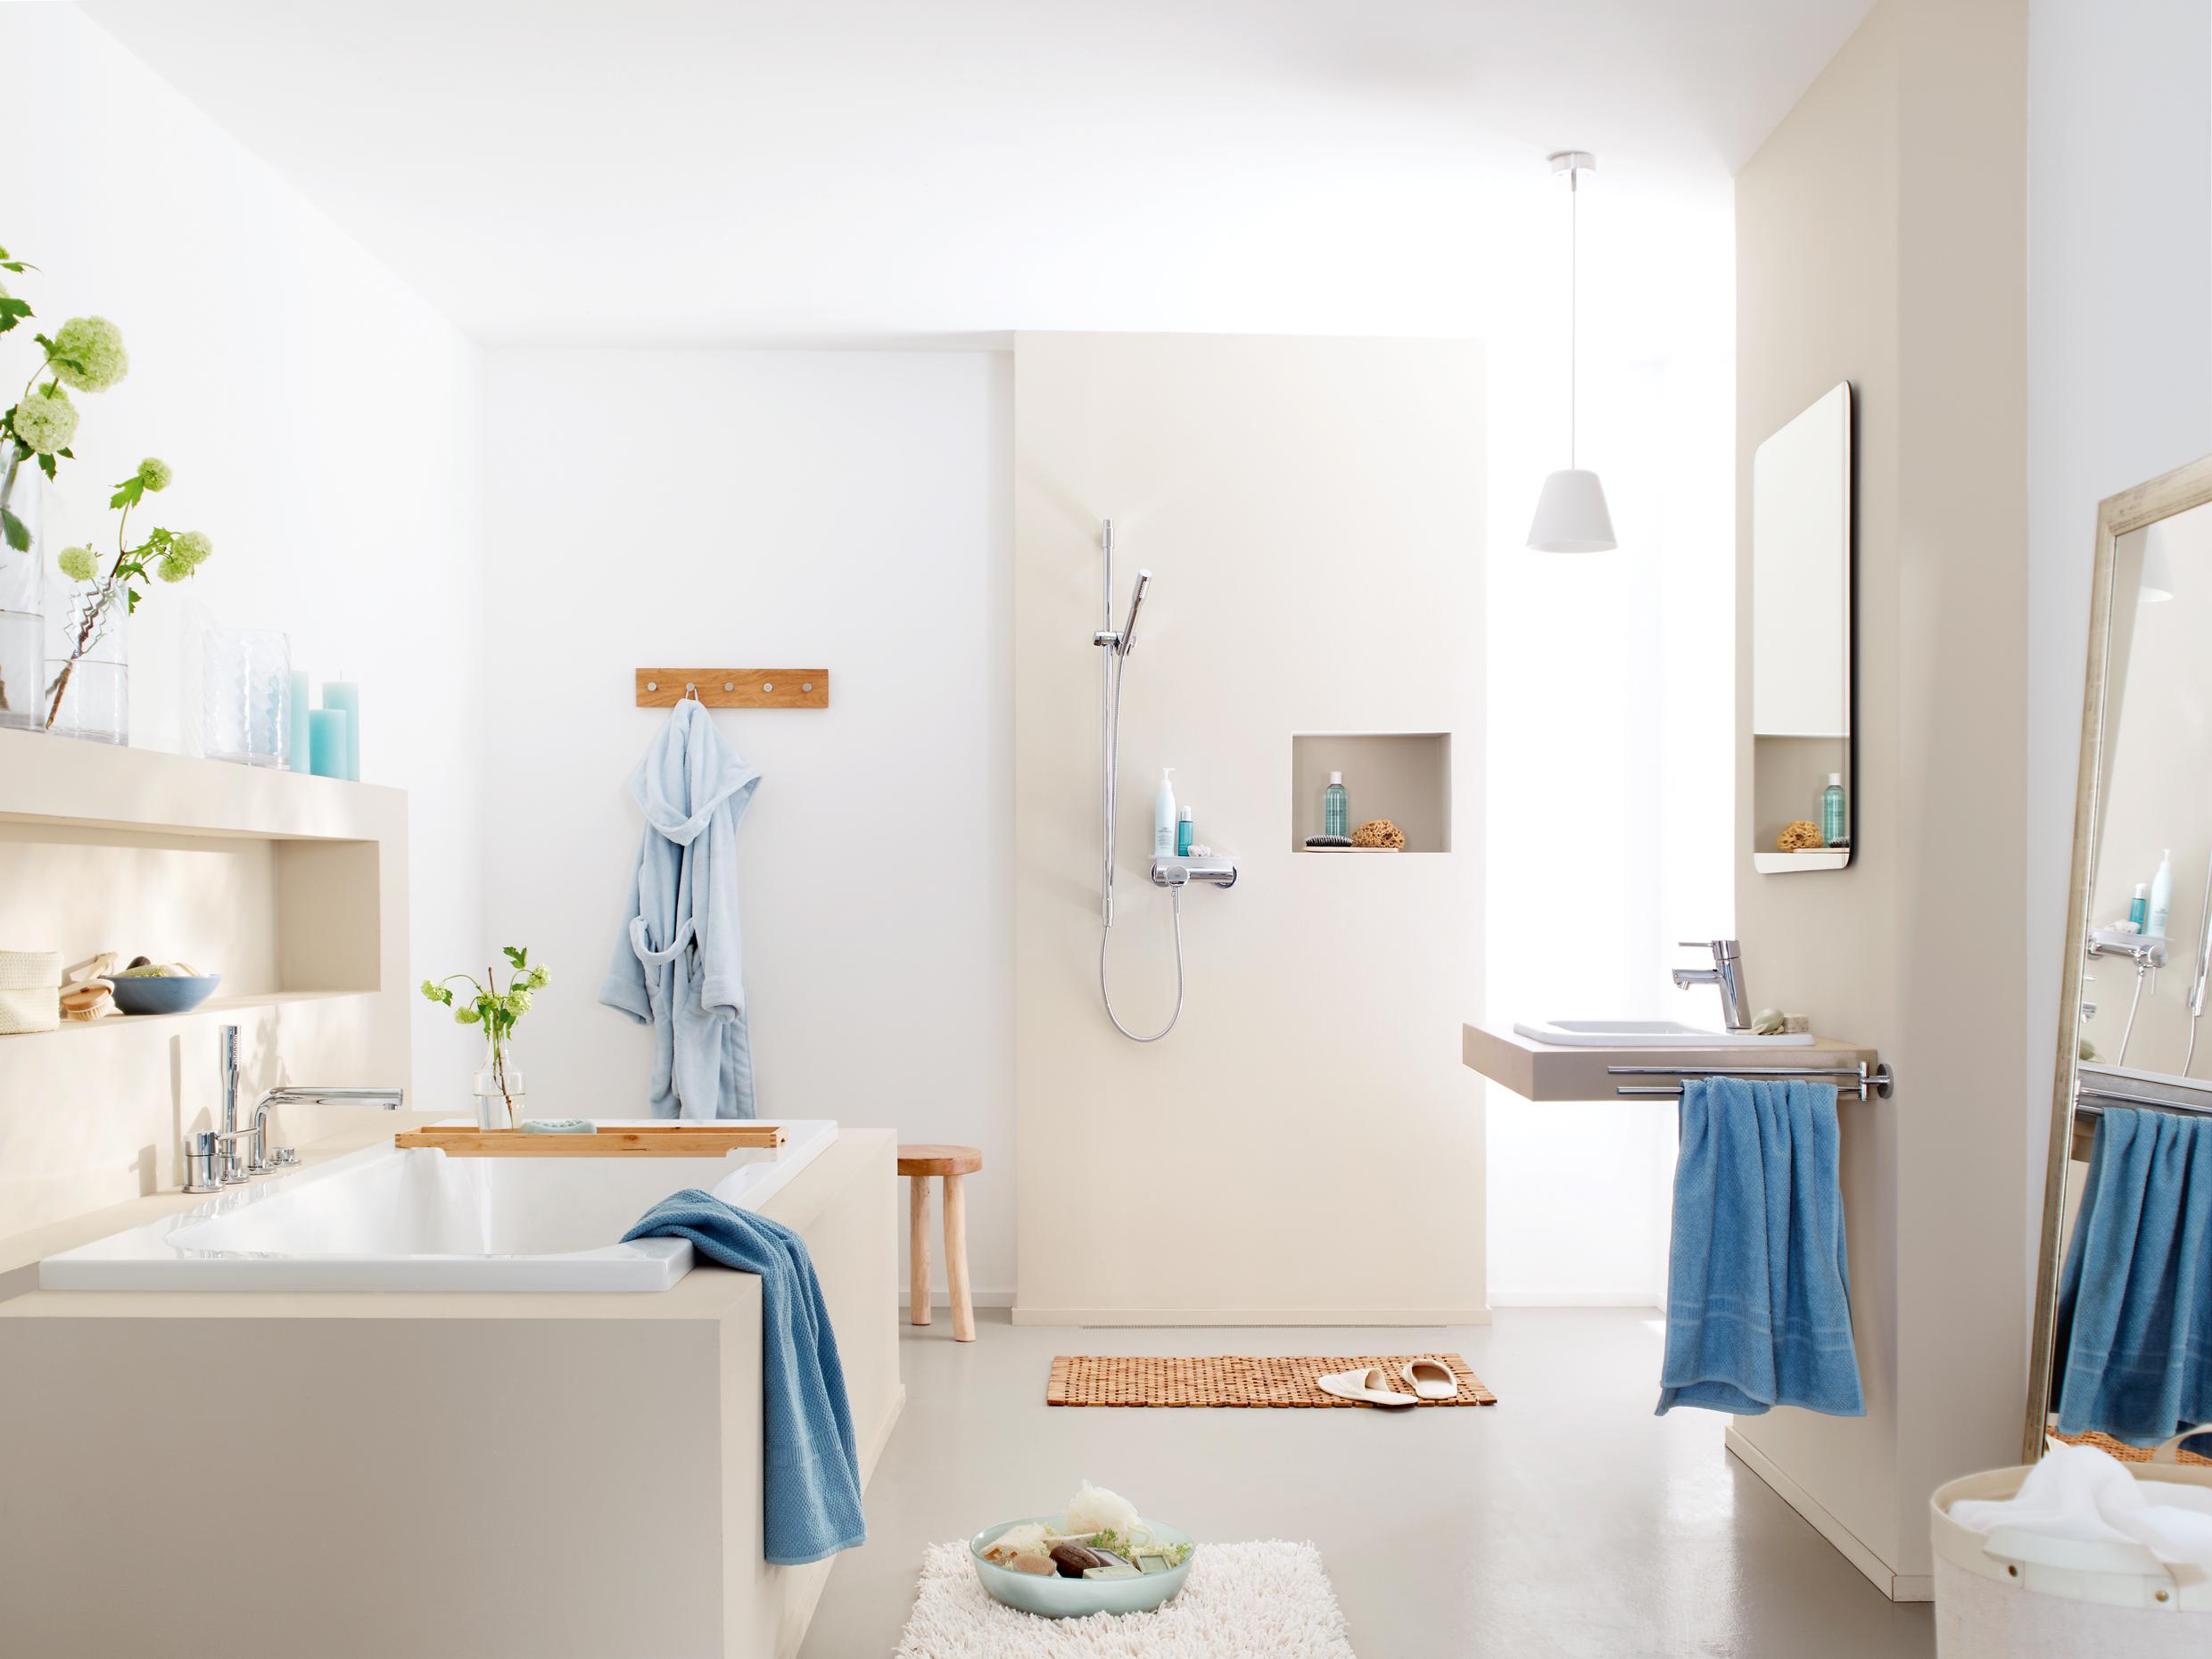 Bad natürlich gestalten #badezimmerspiegel #dusche #waschbecken #badidee ©Grohe